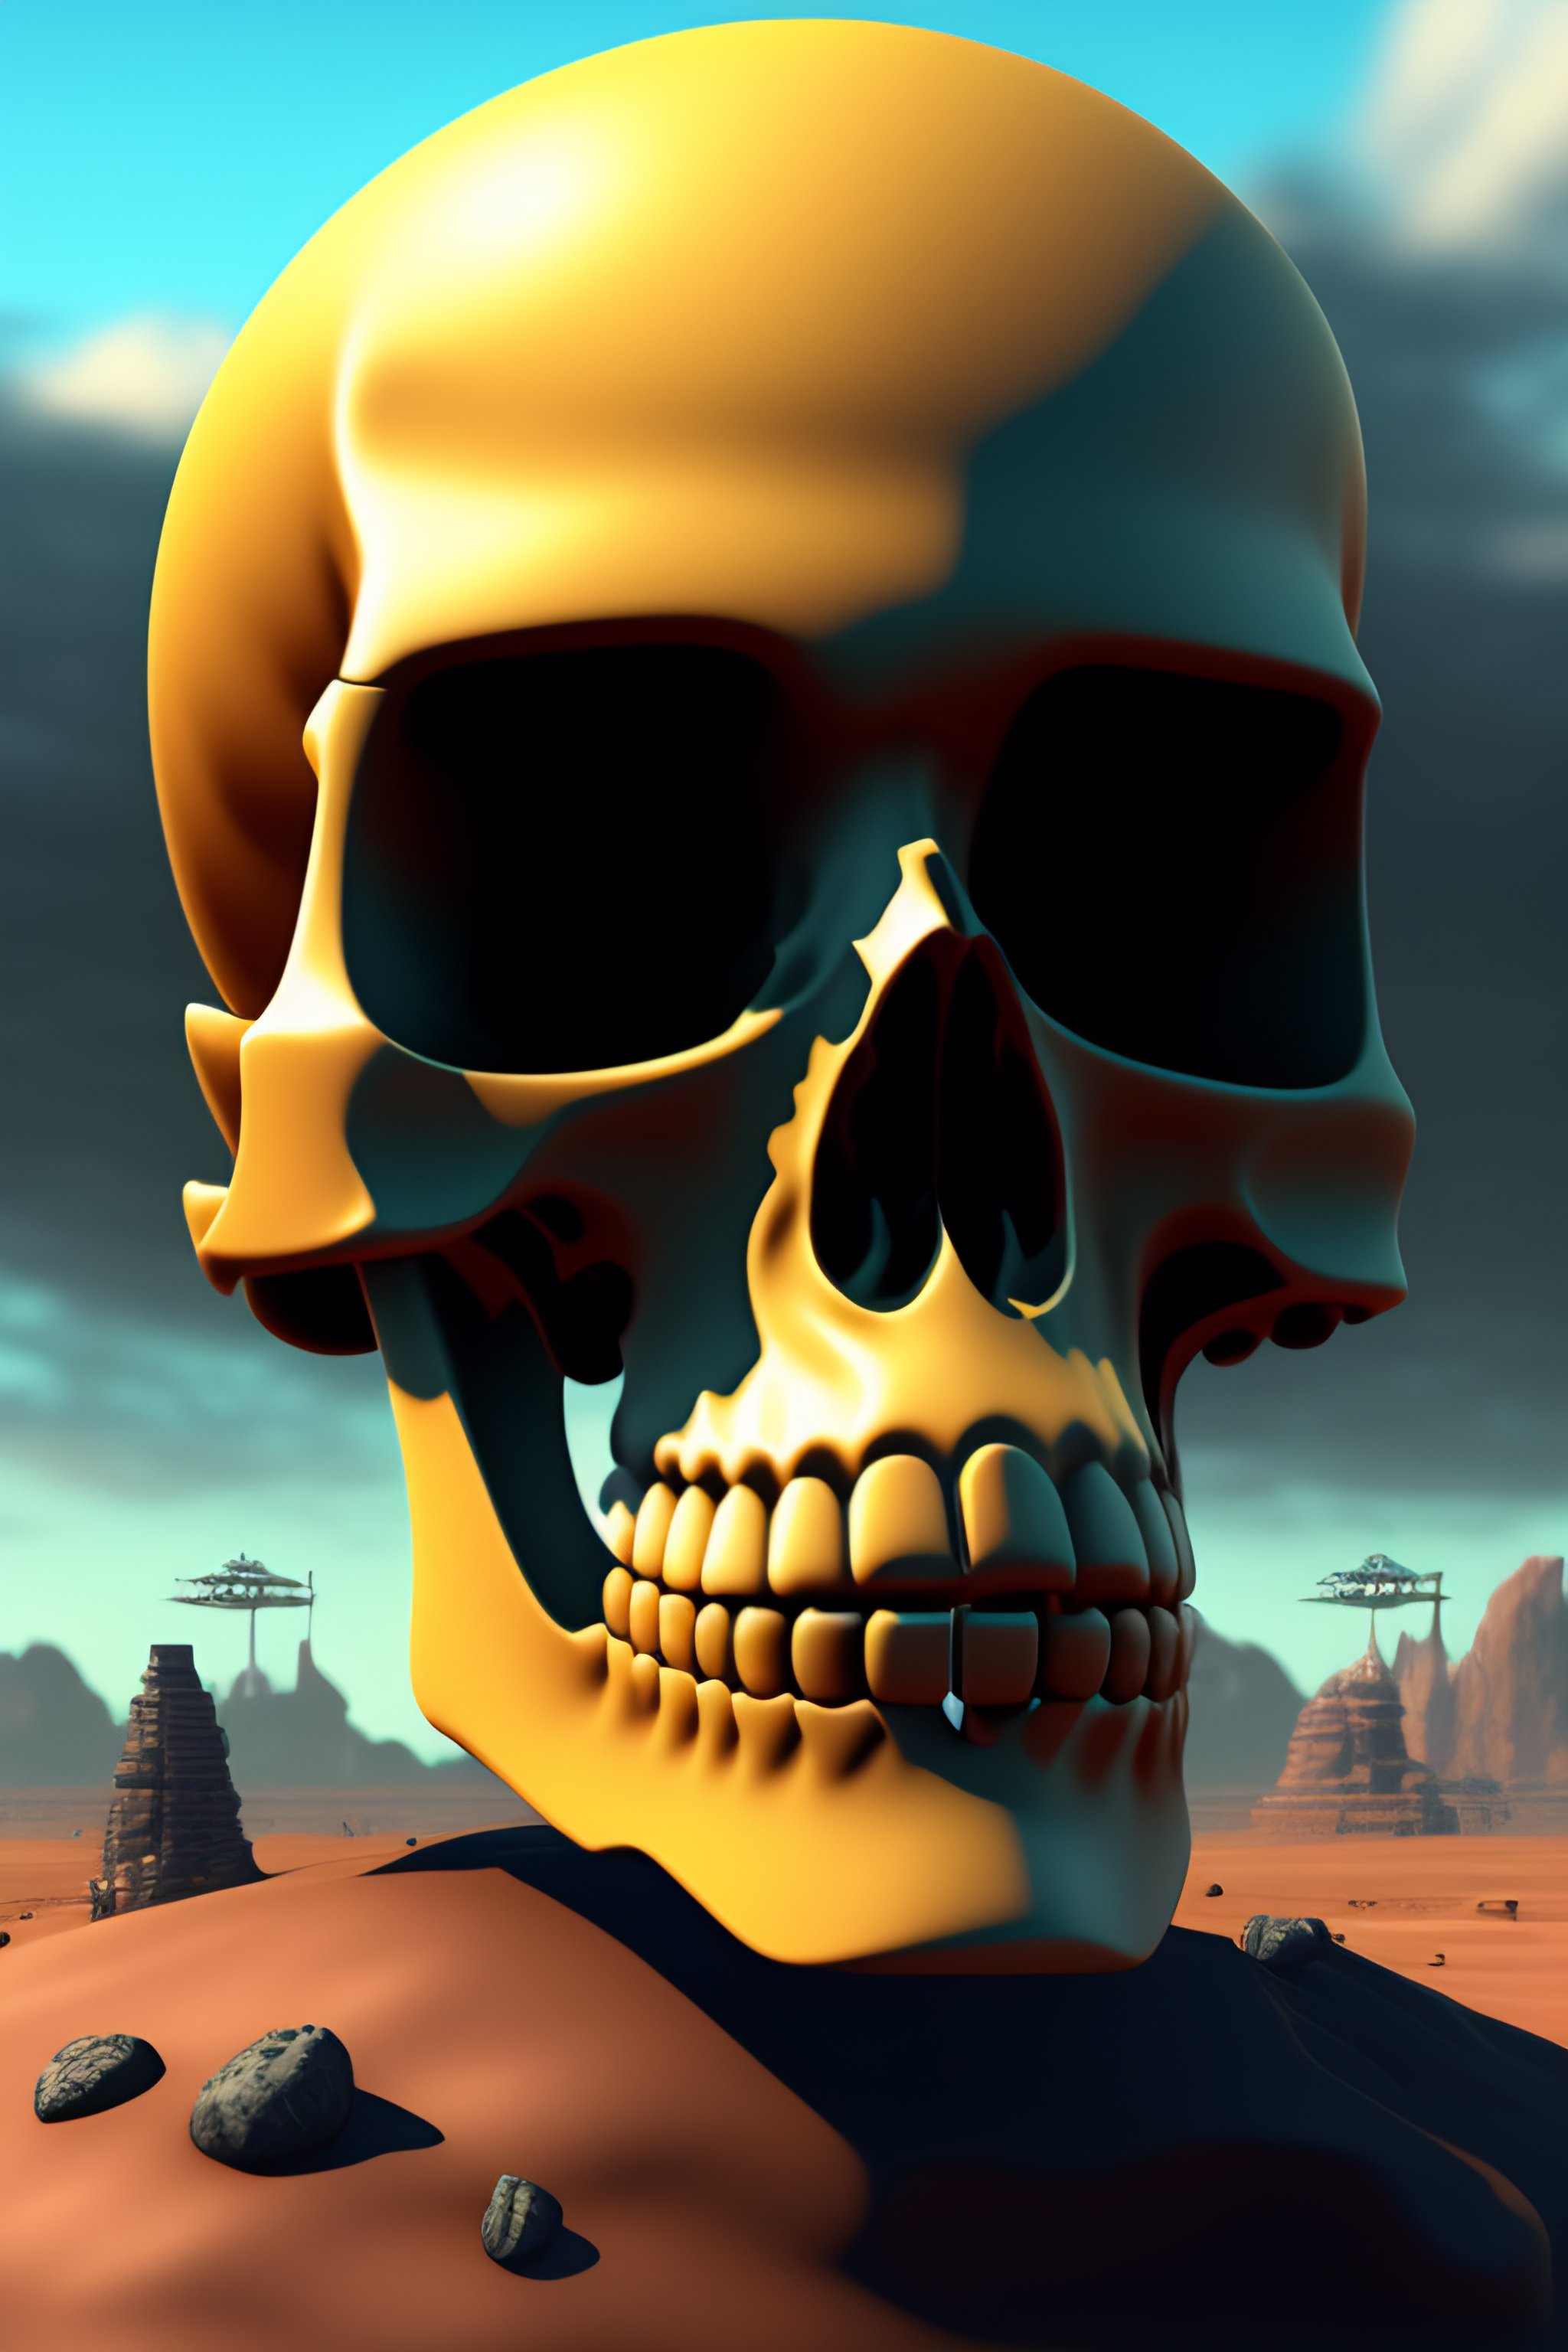 animated skull screensaver for mobile